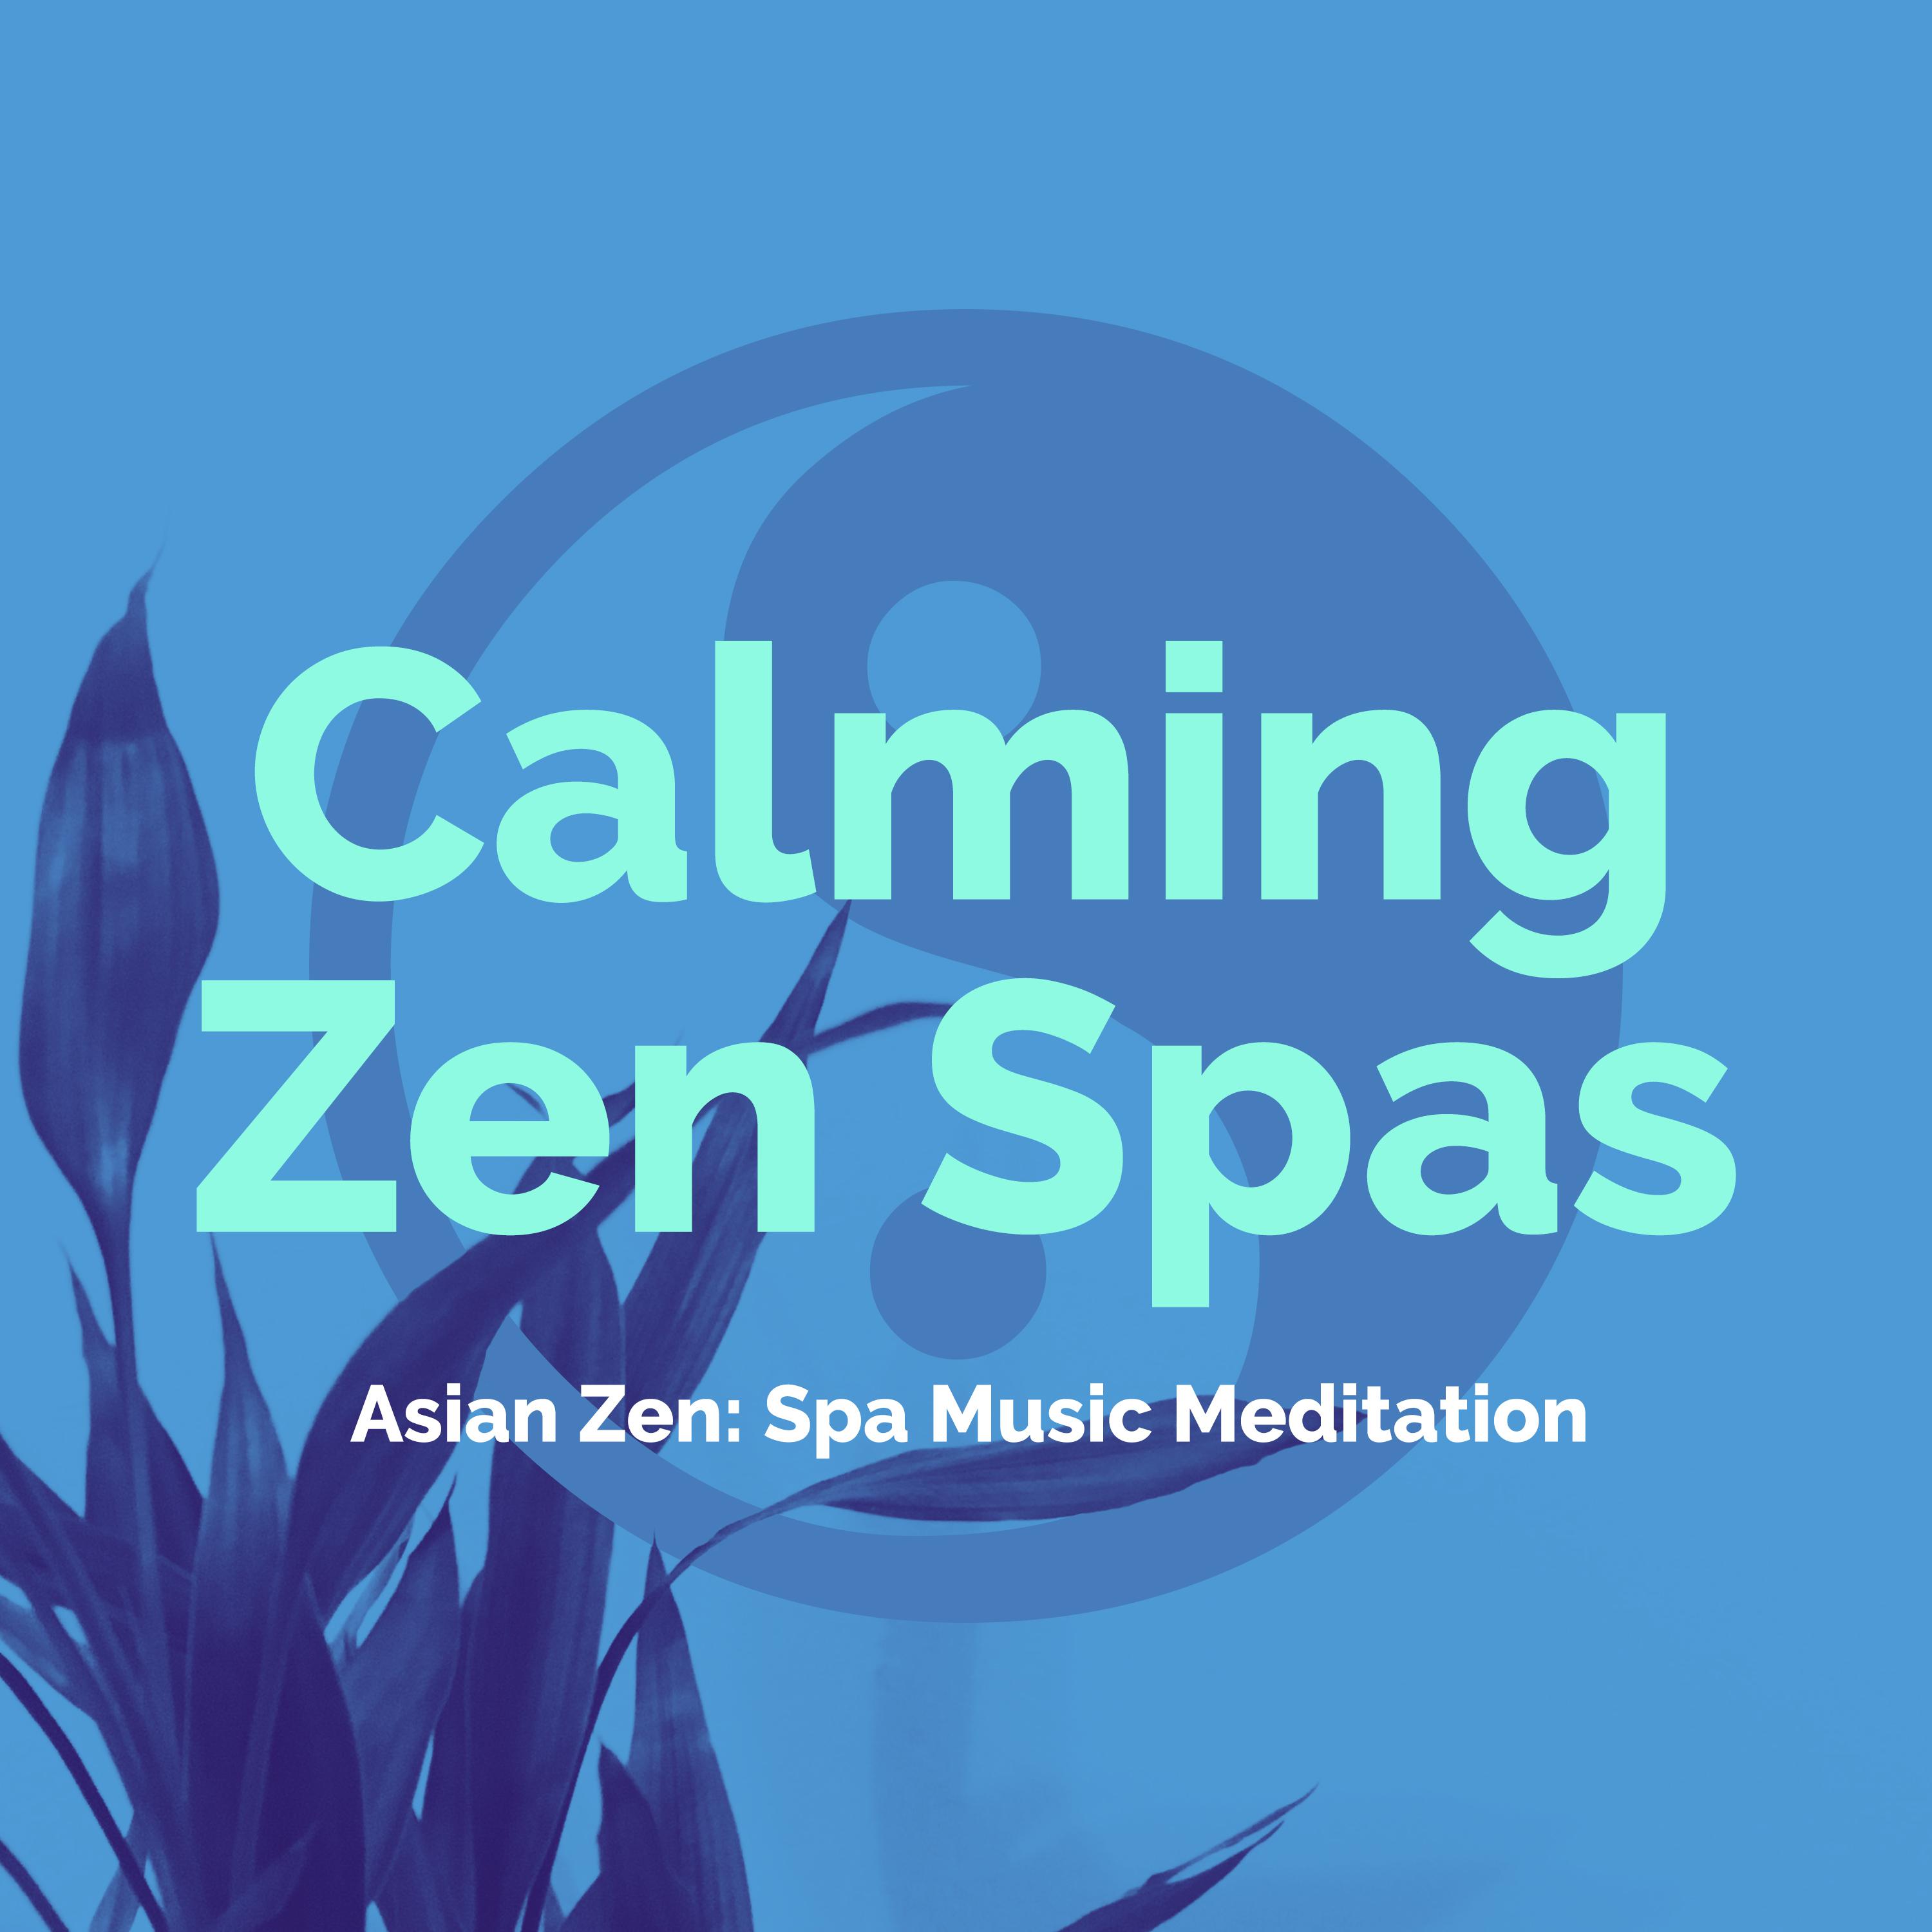 Calming Zen Spas